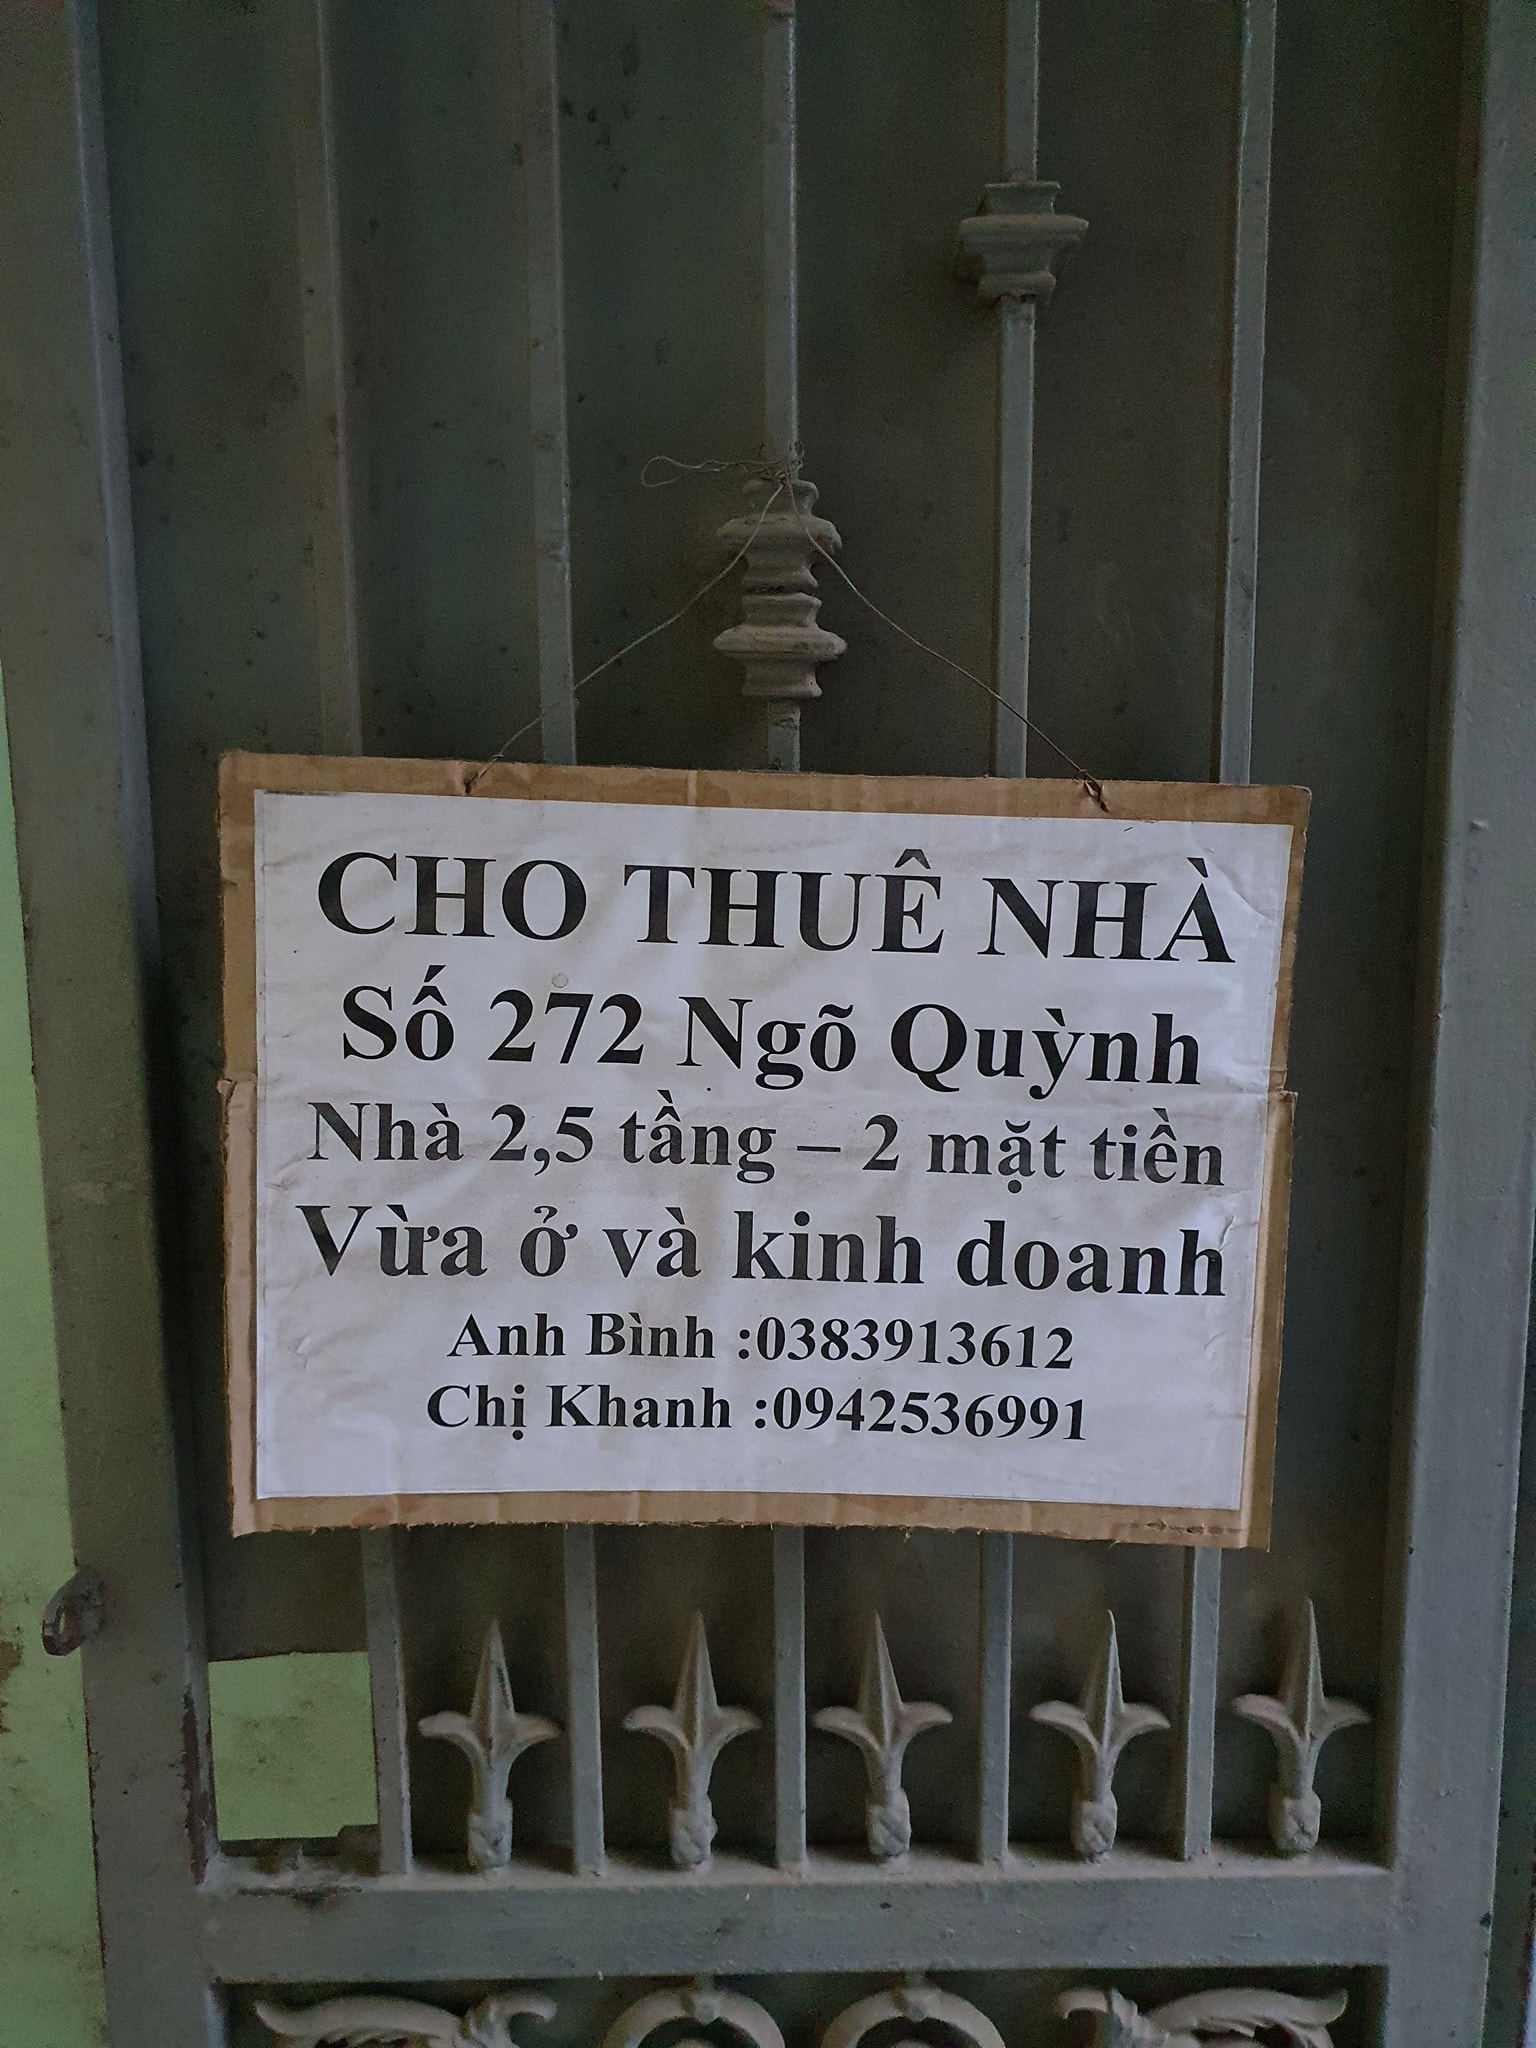 Cho thuê nhà chính chủ nguyên căn tại 272 ngõ Quỳnh, gần phố Thanh Nhàn, Hai Bà Trưng, Hà Nội. 11127797